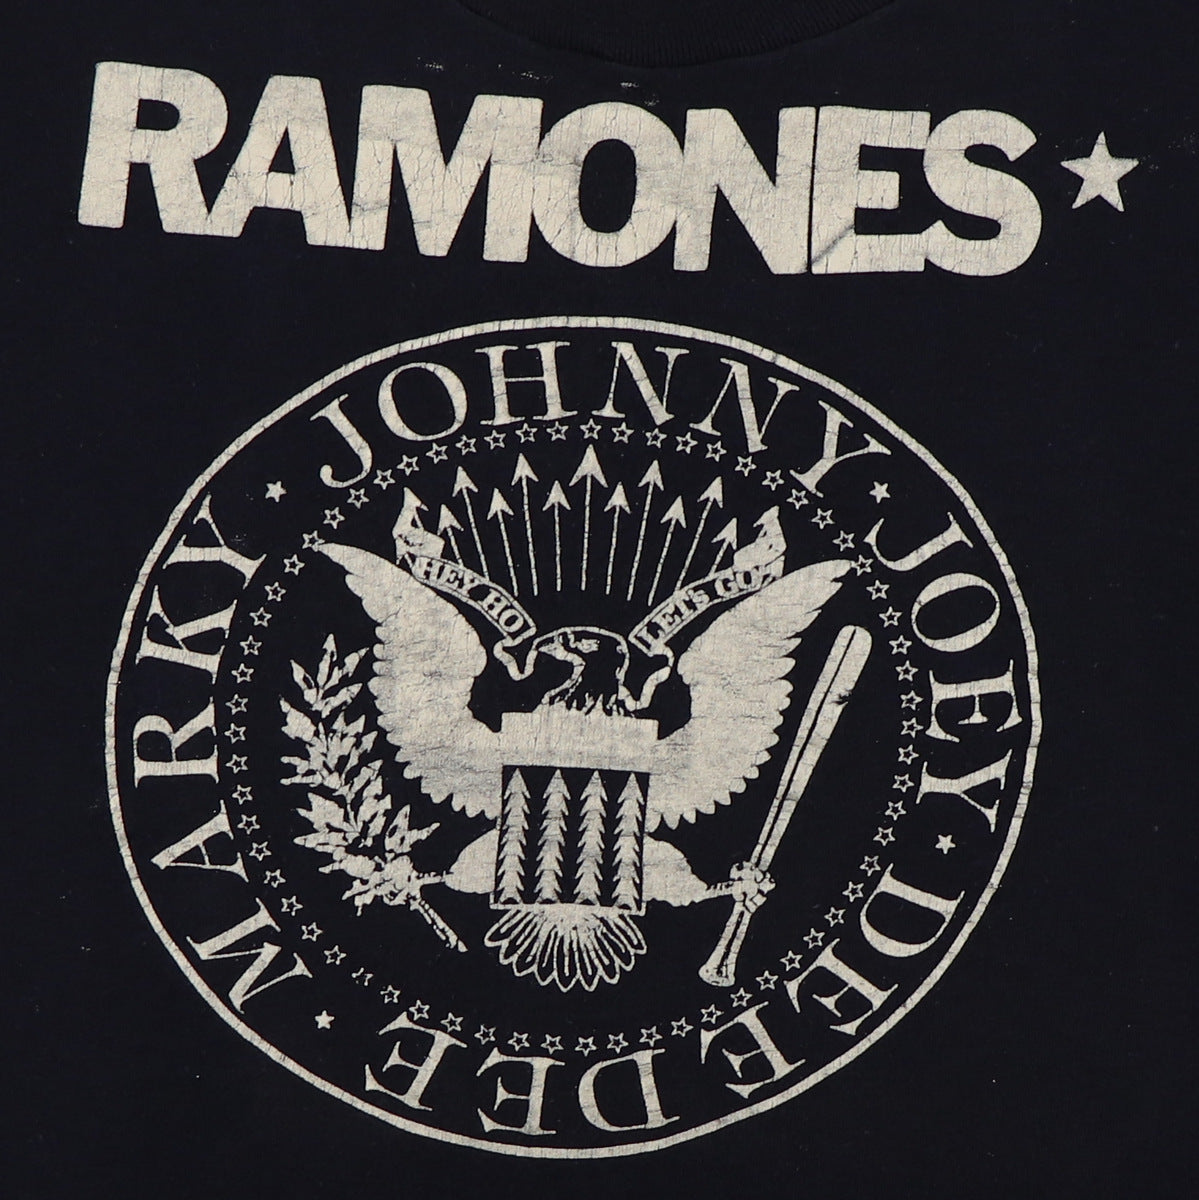 1970s Ramones Shirt